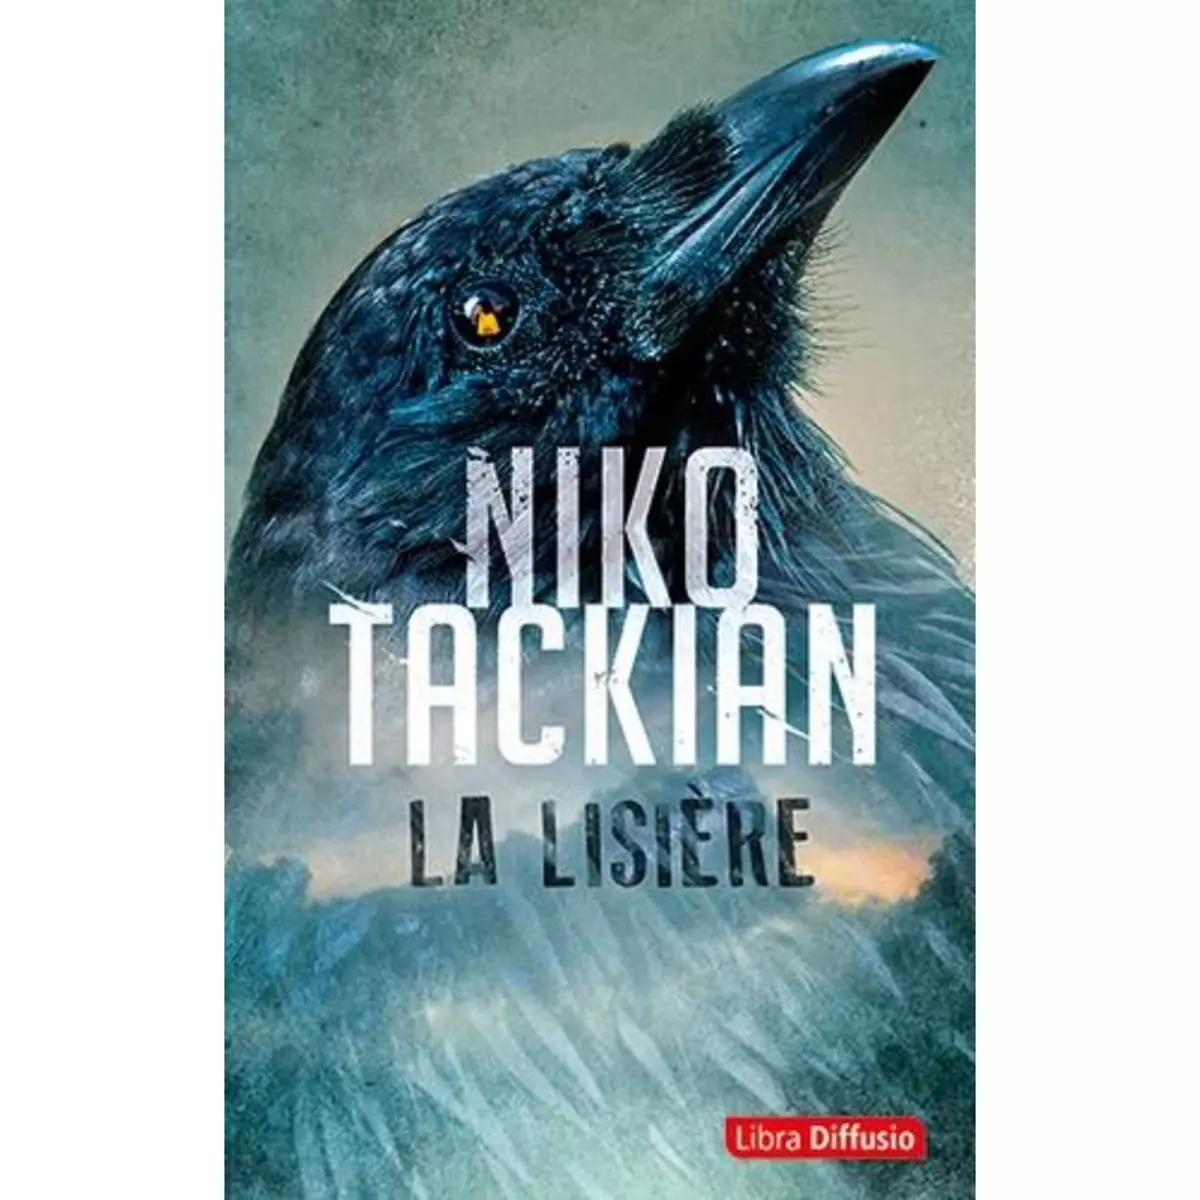  LA LISIERE [EDITION EN GROS CARACTERES], Tackian Niko